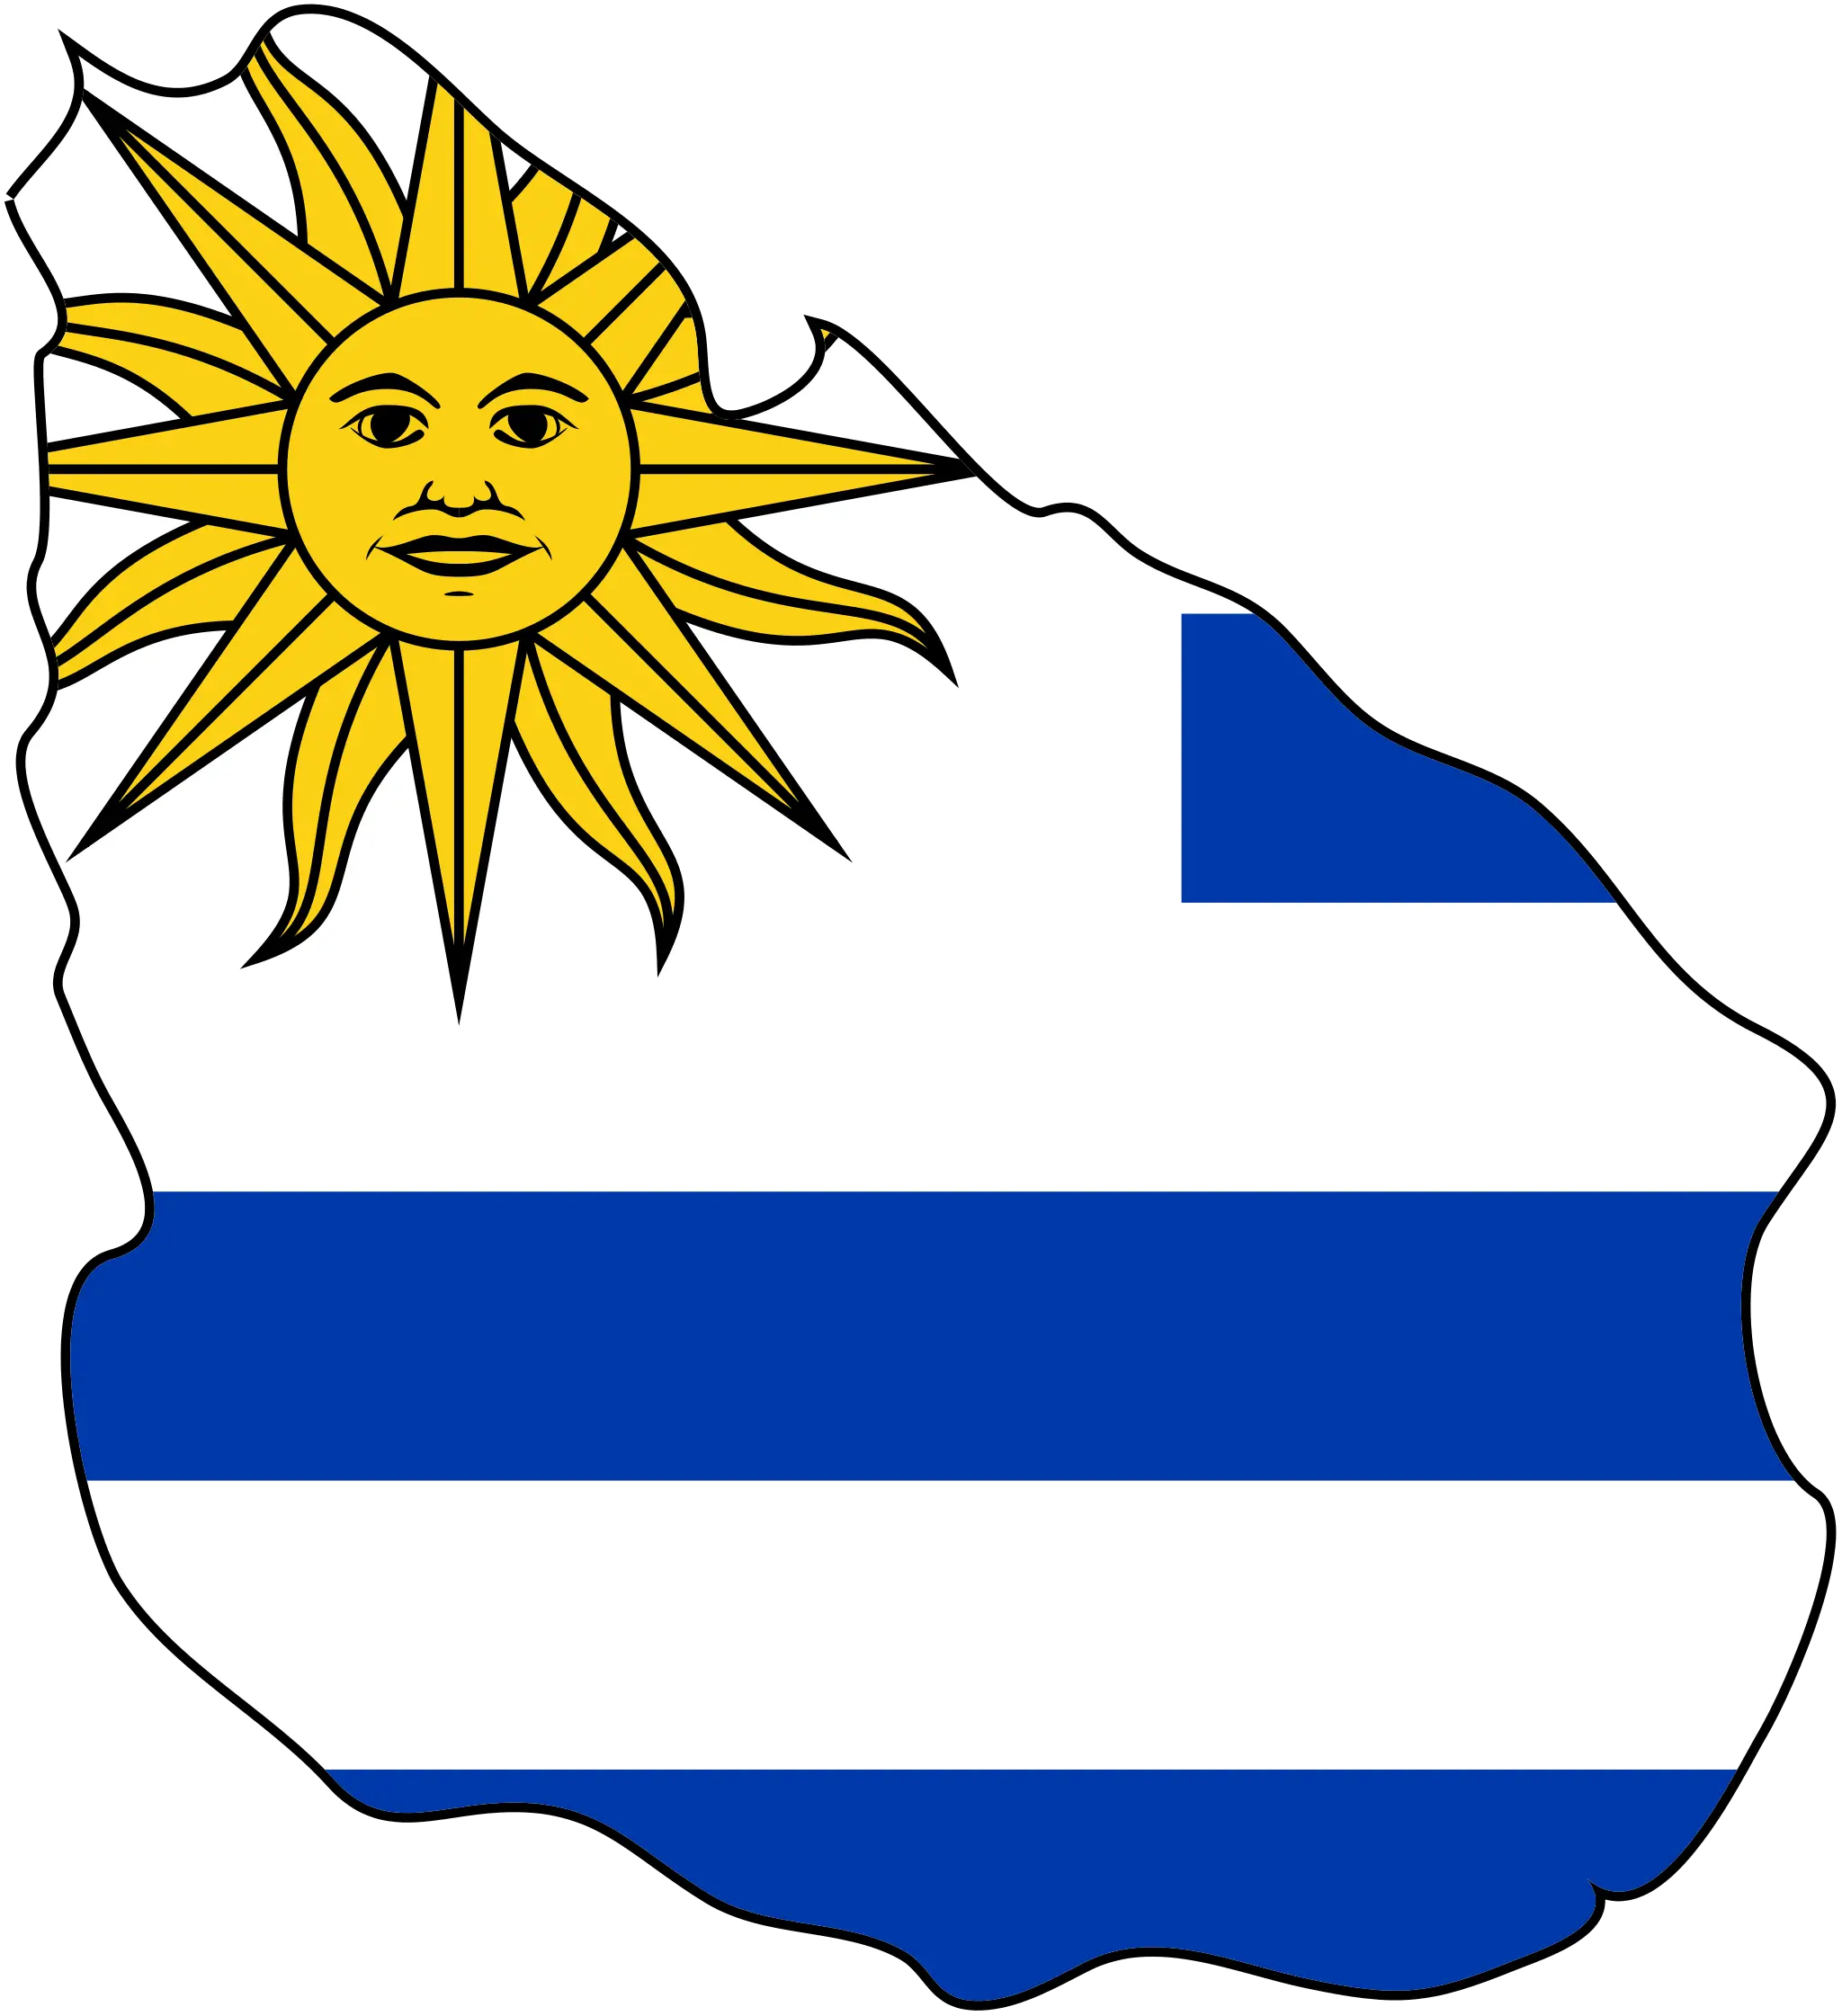 Uruguay_bayrak_harita.png